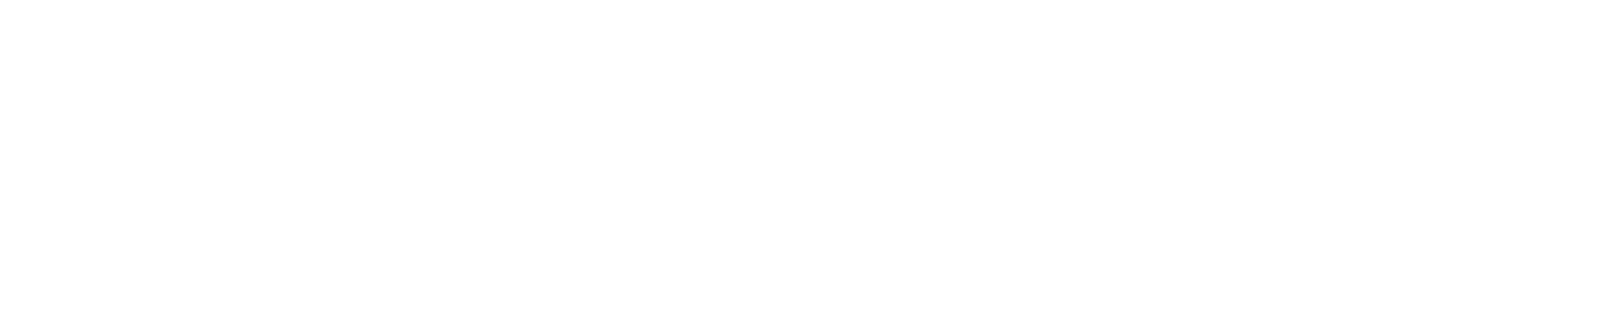 Maybank logo large for dark backgrounds (transparent PNG)